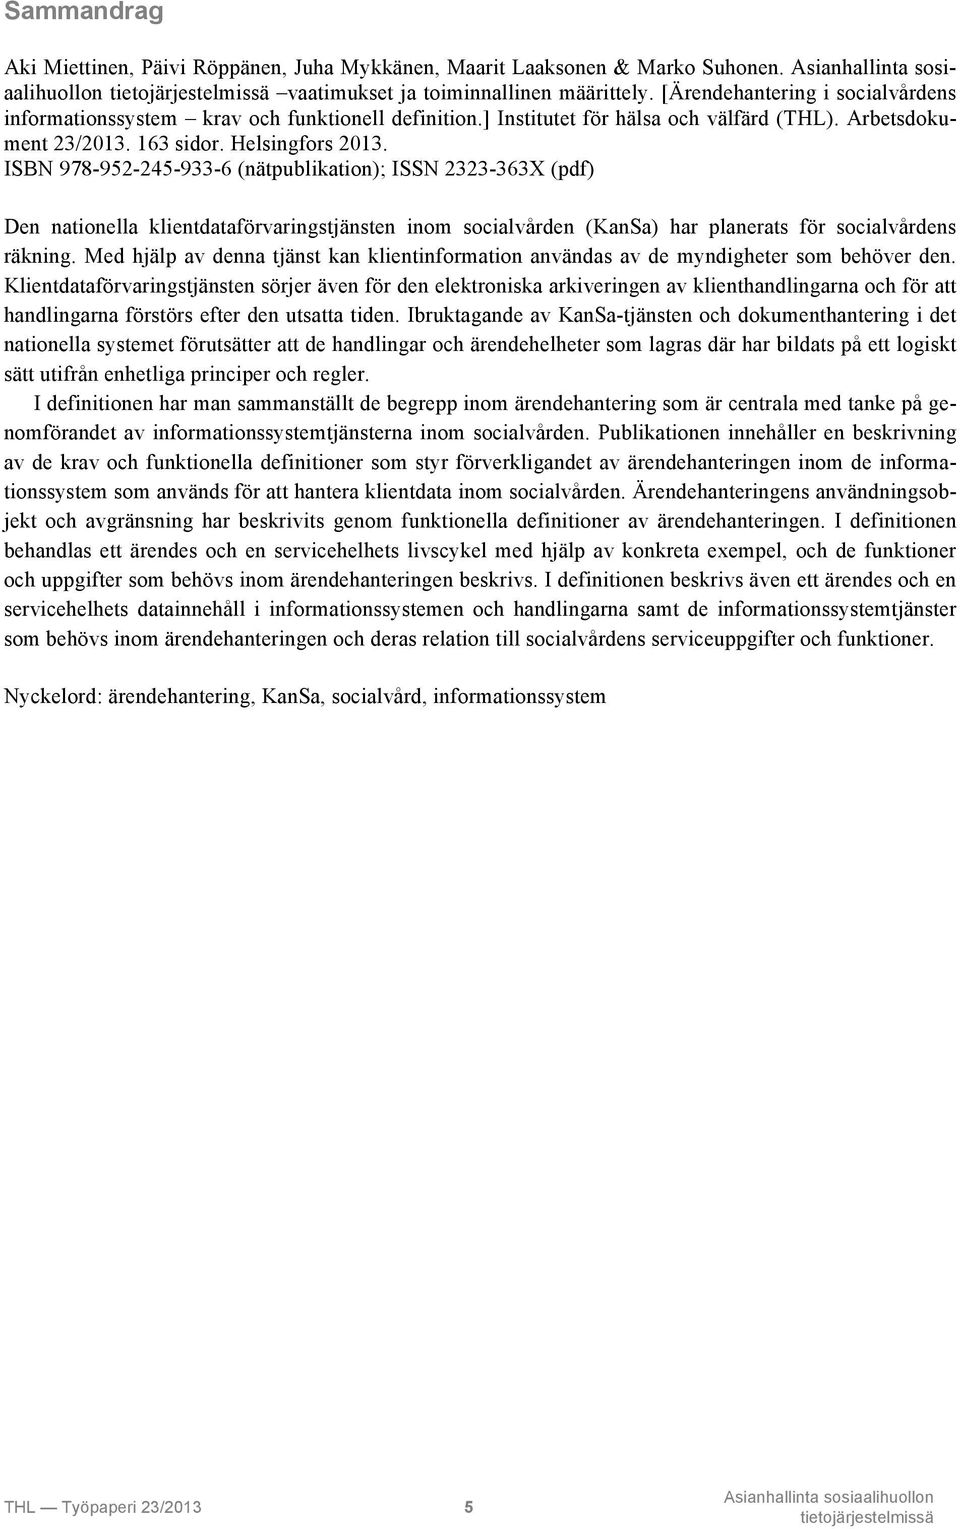 ISBN 978-952-245-933-6 (nätpublikation); ISSN 2323-363X (pdf) Den nationella klientdataförvaringstjänsten inom socialvården (KanSa) har planerats för socialvårdens räkning.